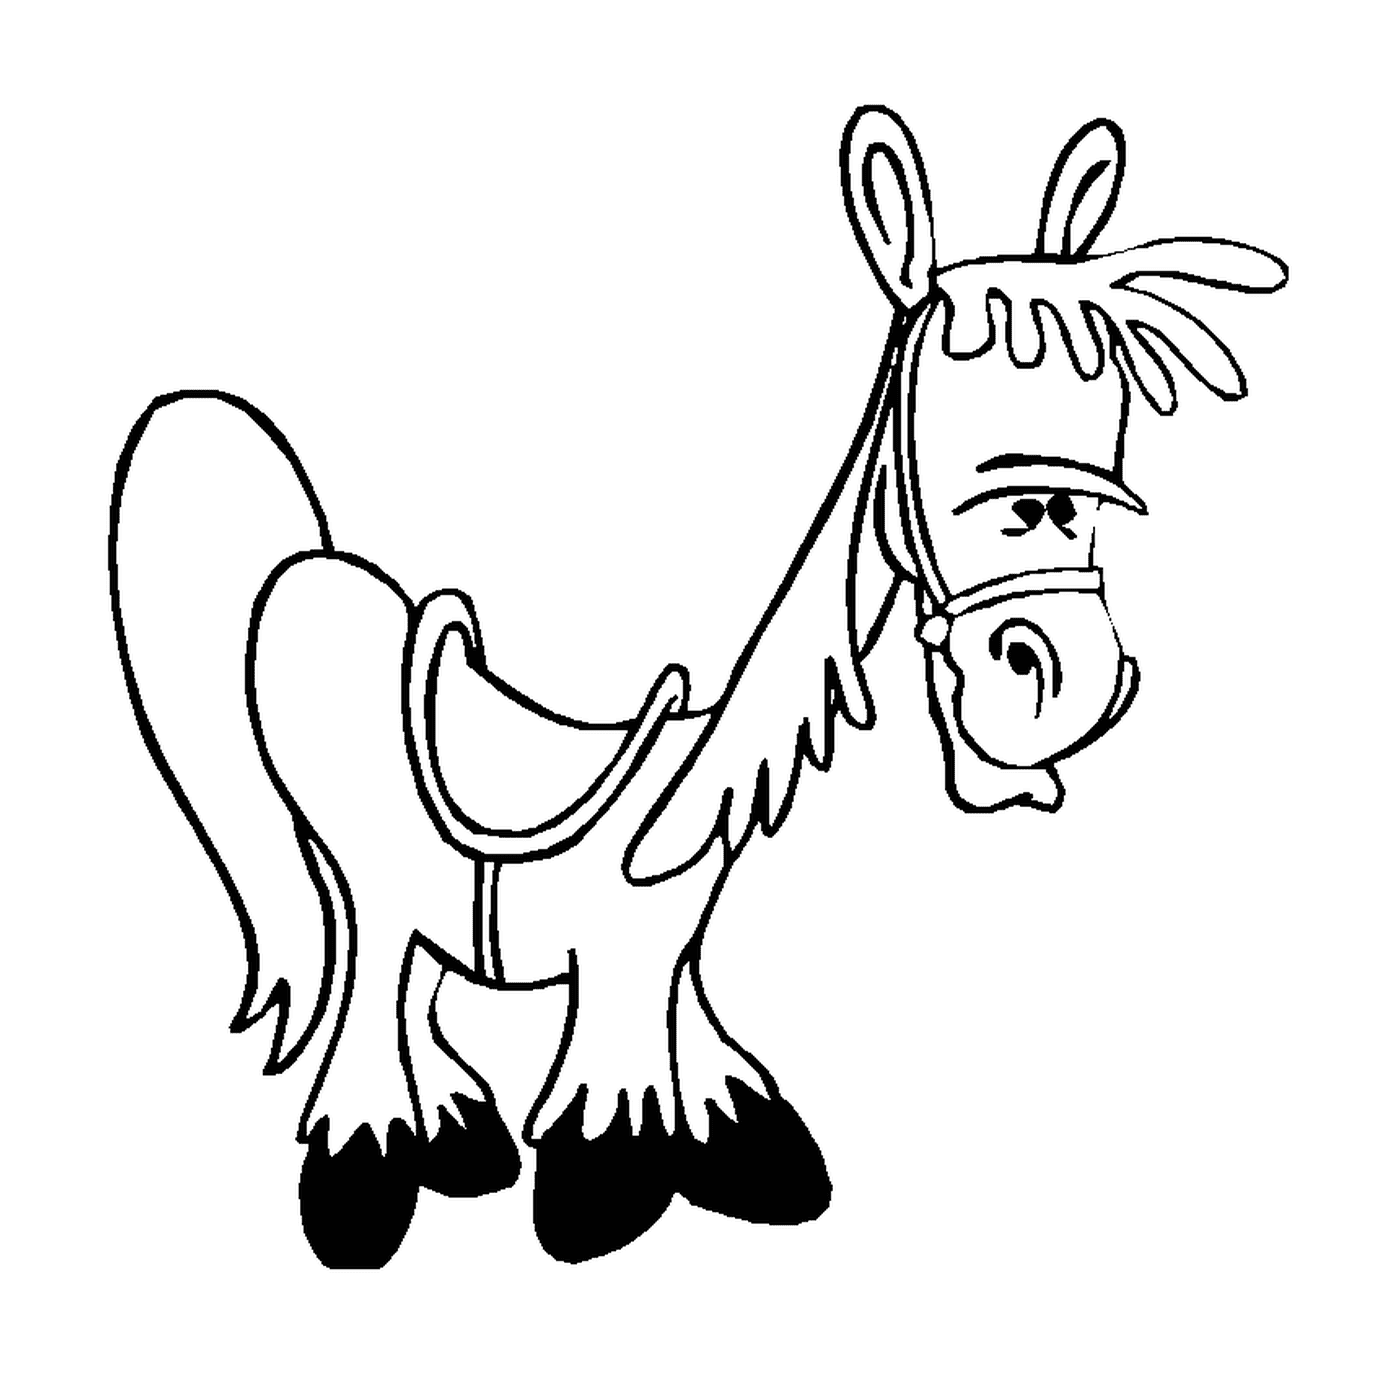  Ilustración divertida de un caballo con un arnés 